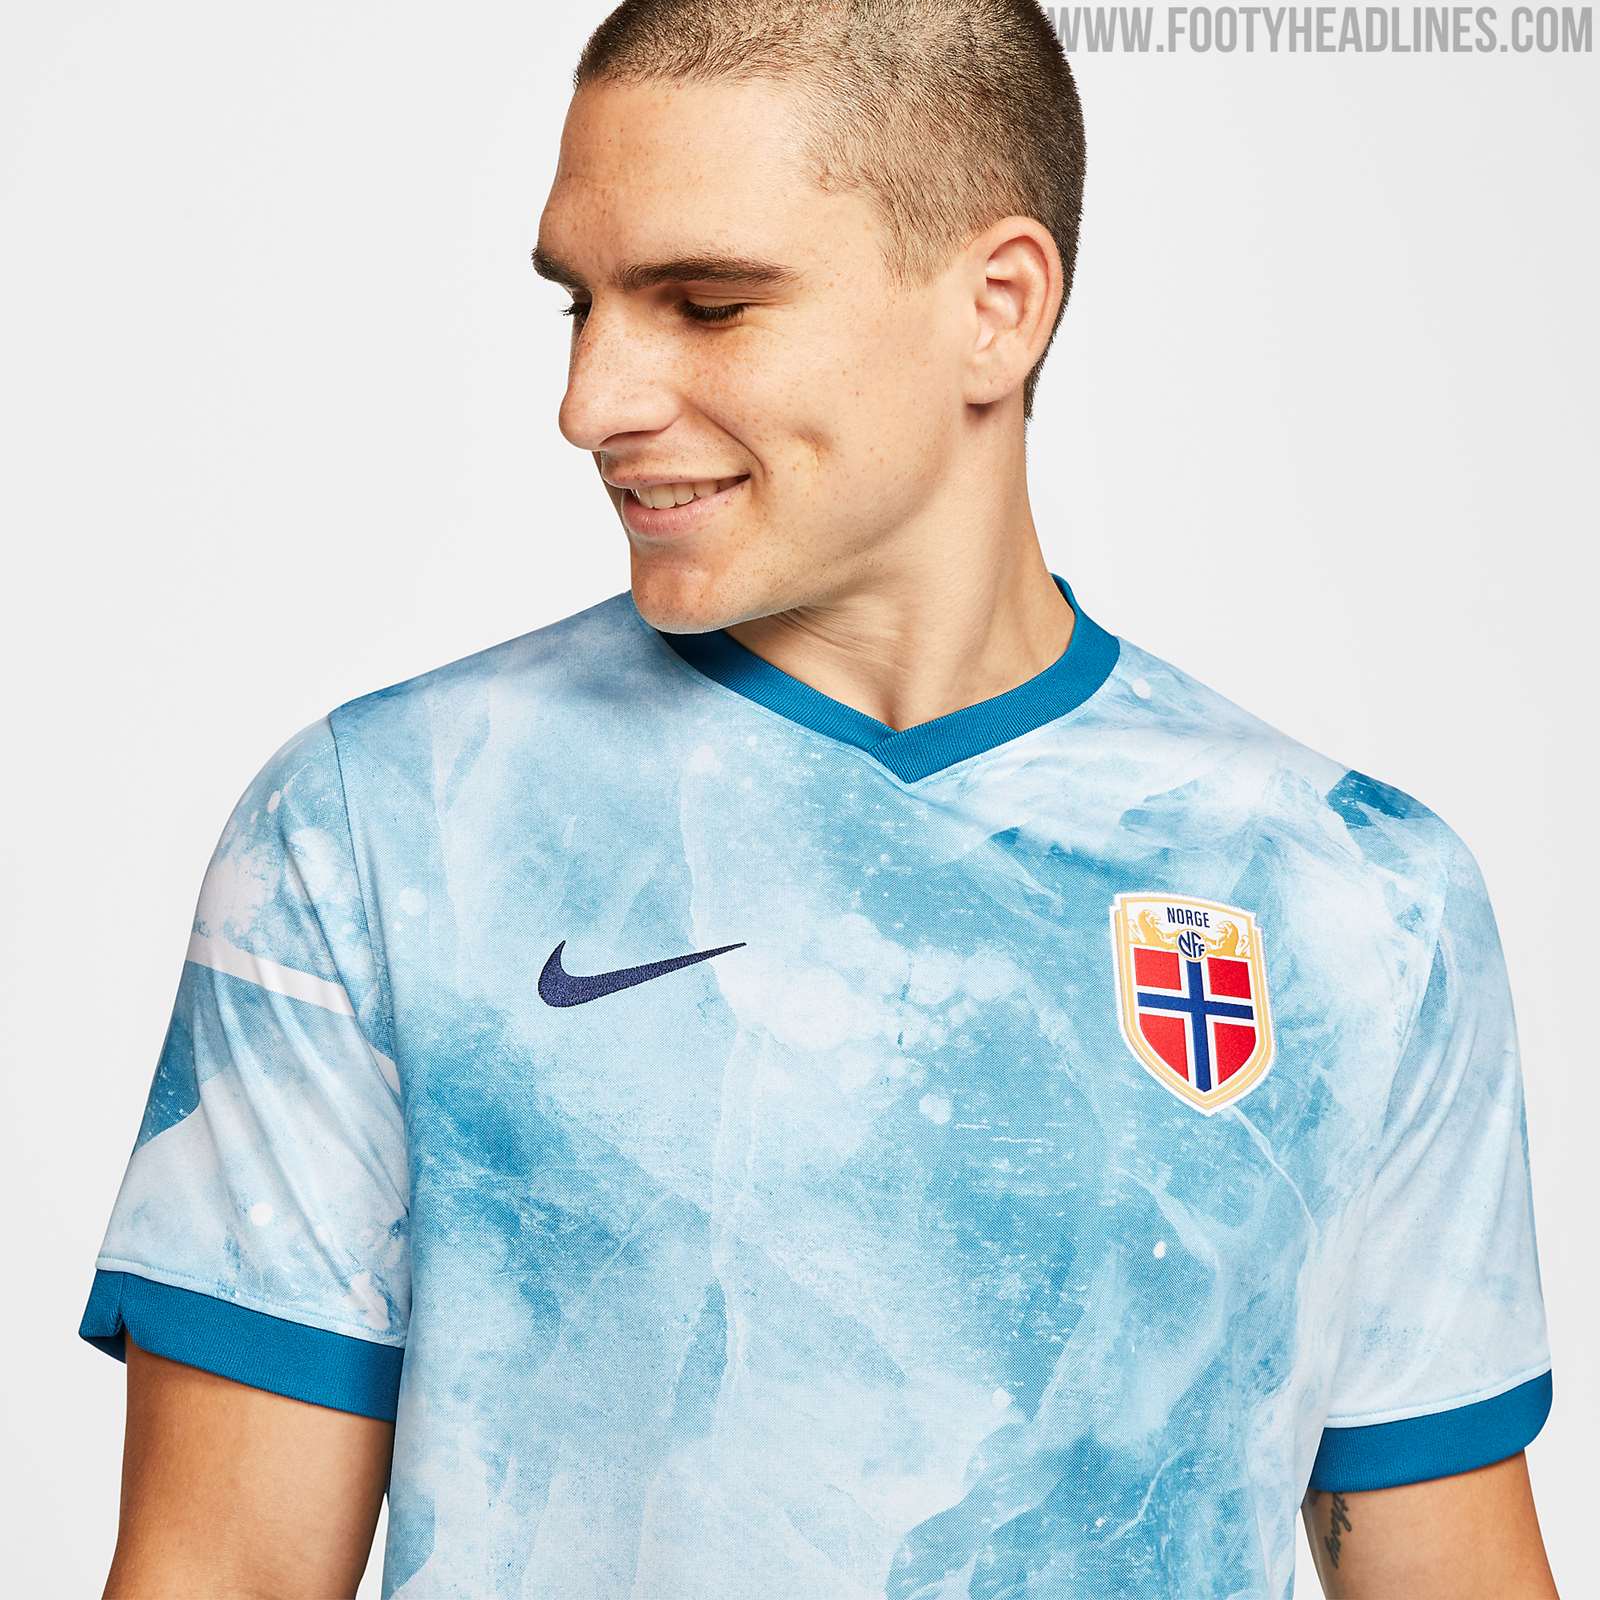 Nike Norway 2020 Away Kit Released - Footy Headlines